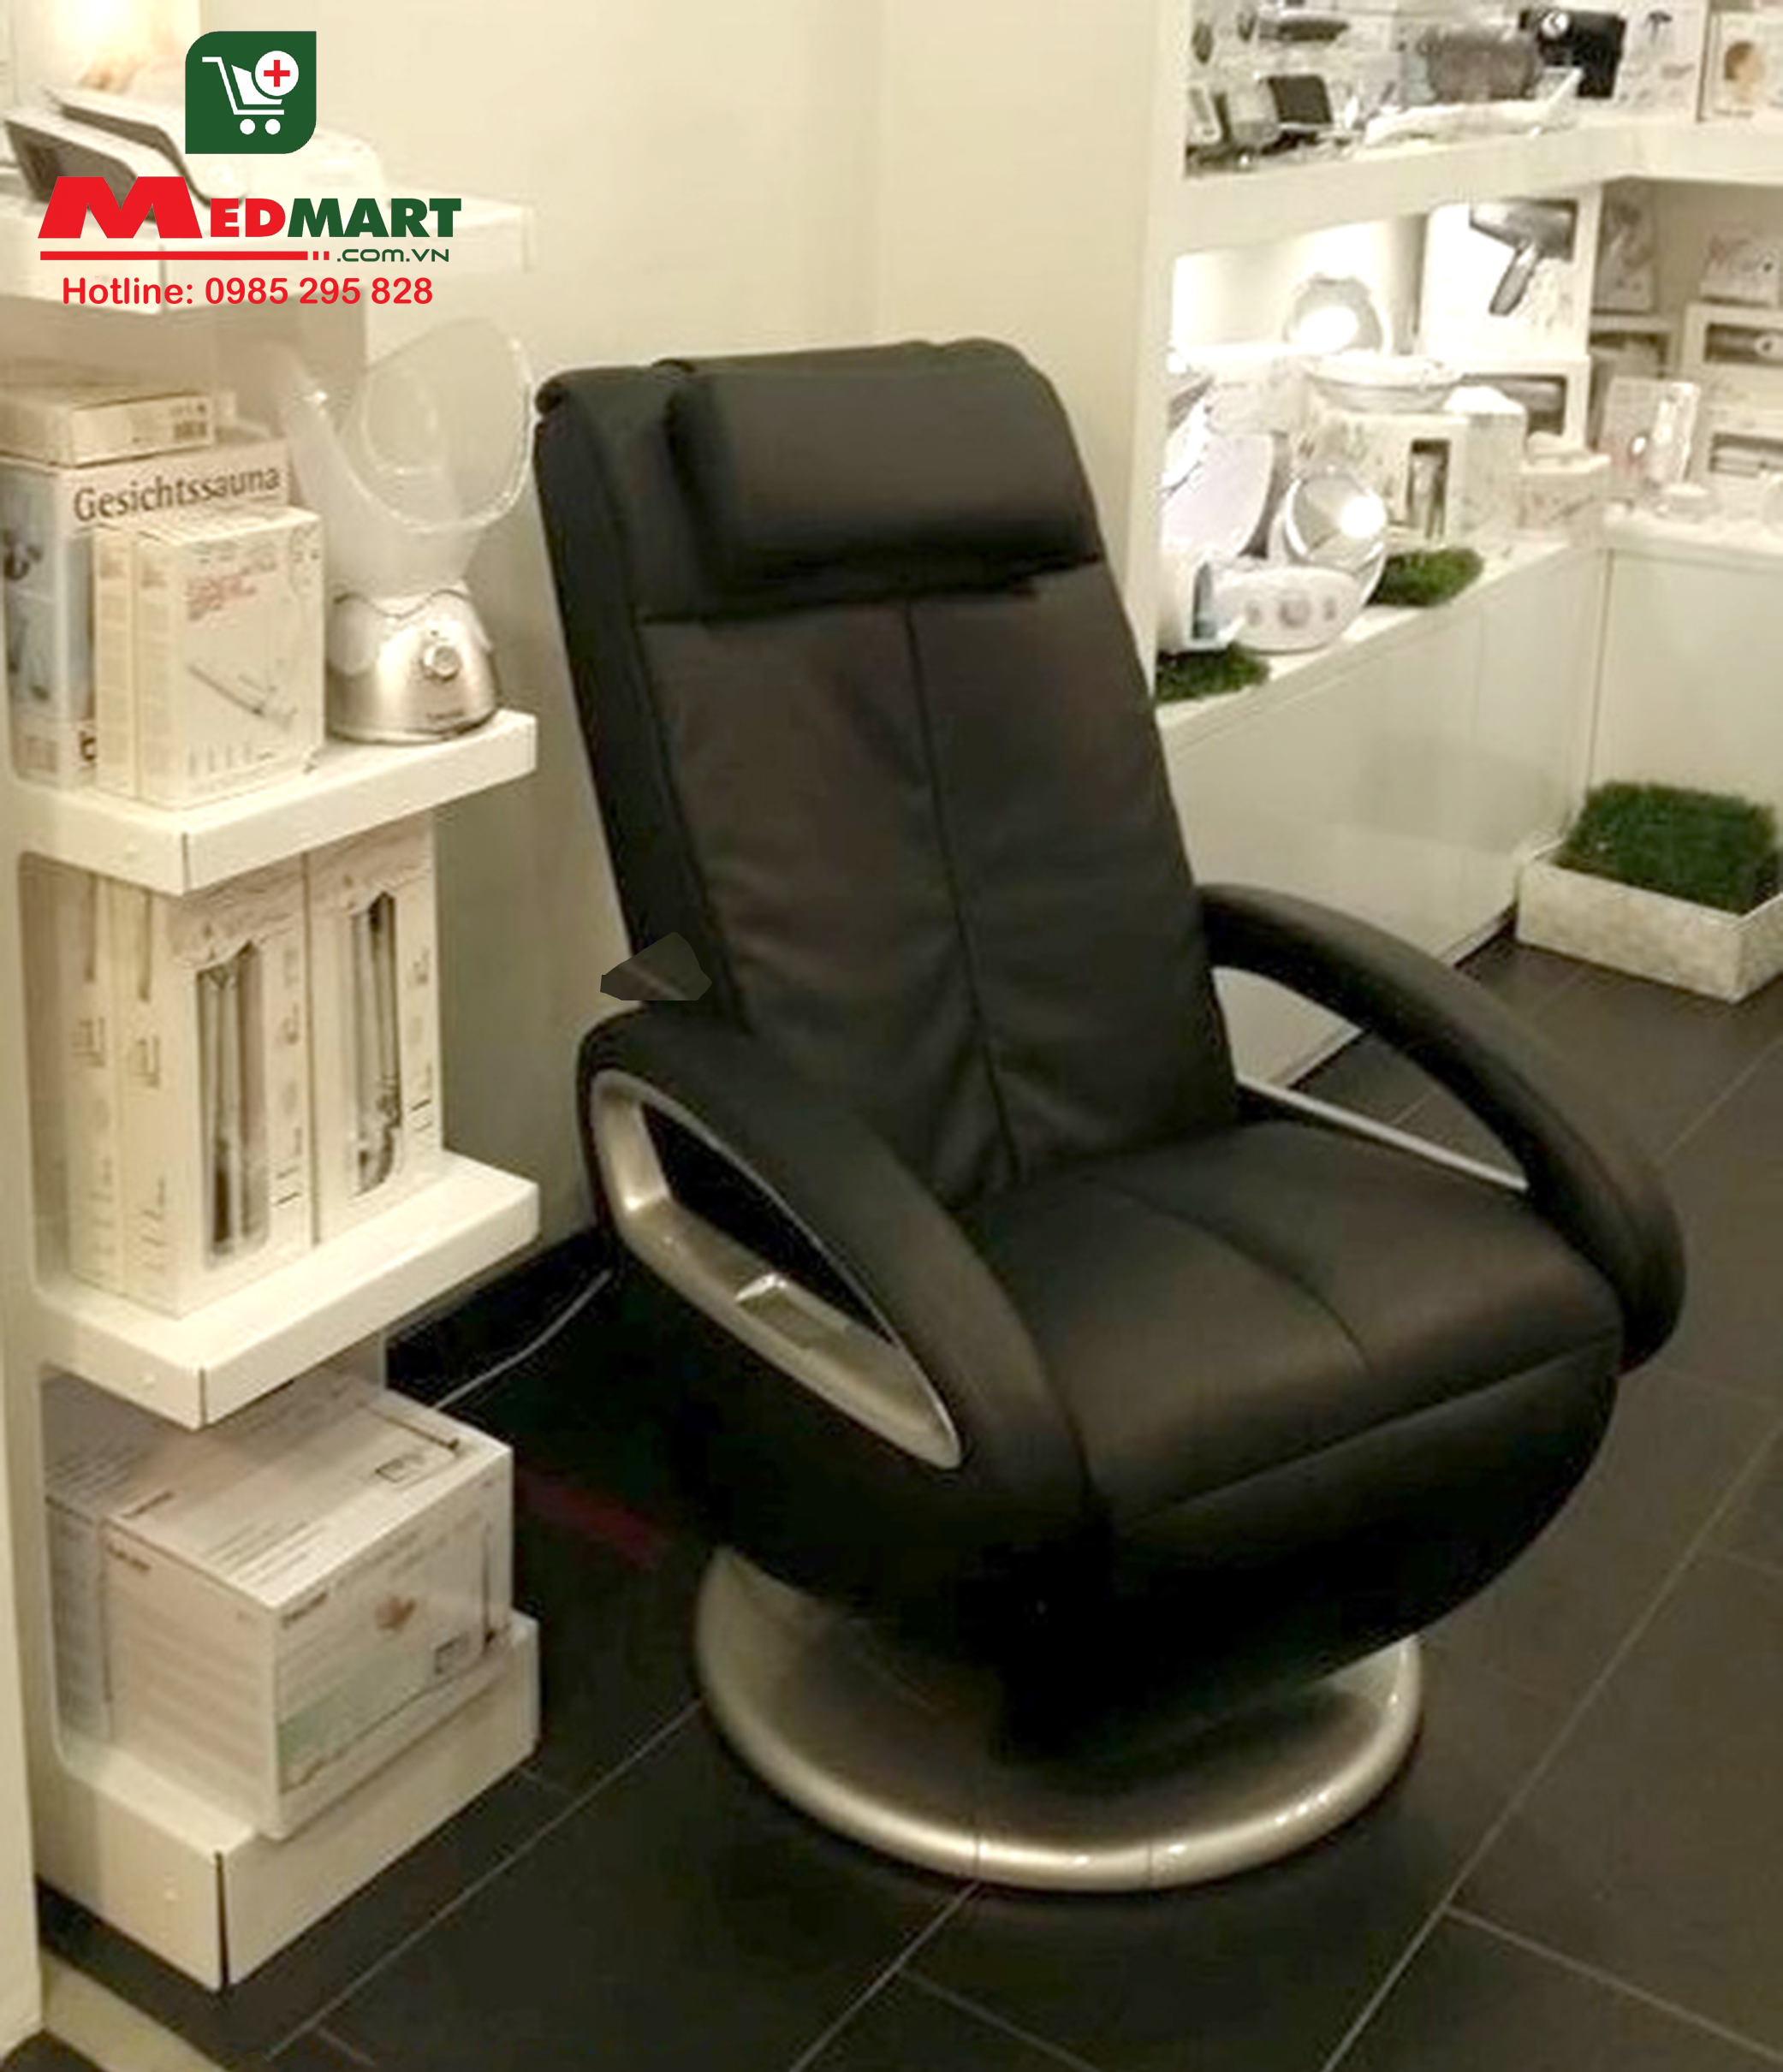 Ghế massage toàn thân Beurer MC3800 có màu đen sang trọng.